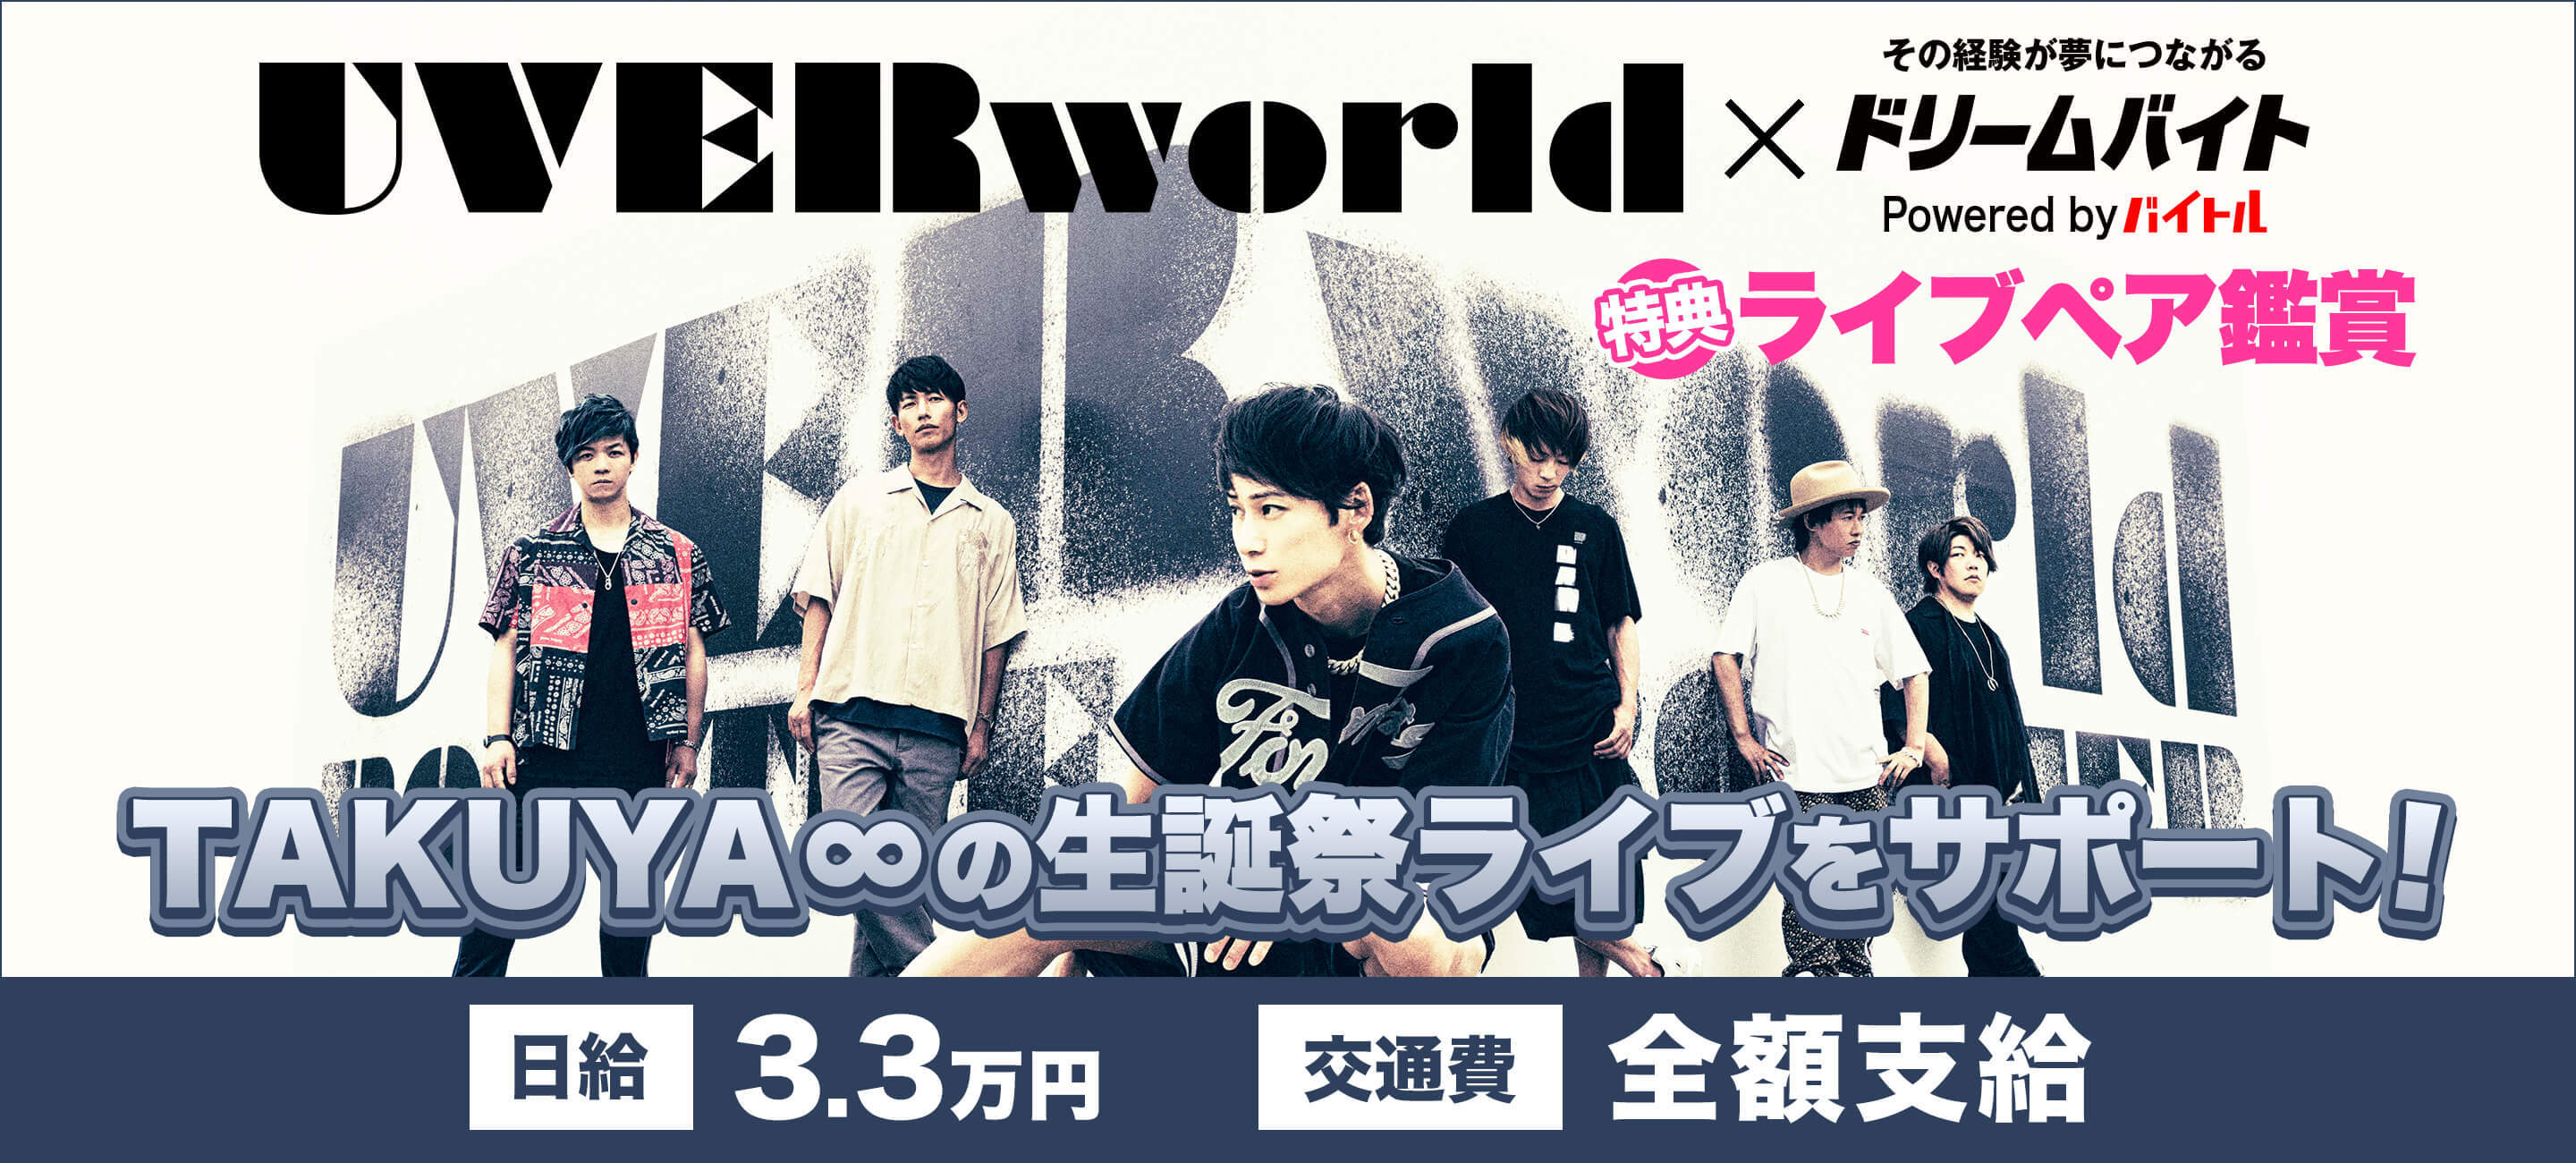 日本を代表する大人気ロックバンド Uverworldのライブをサポートできる